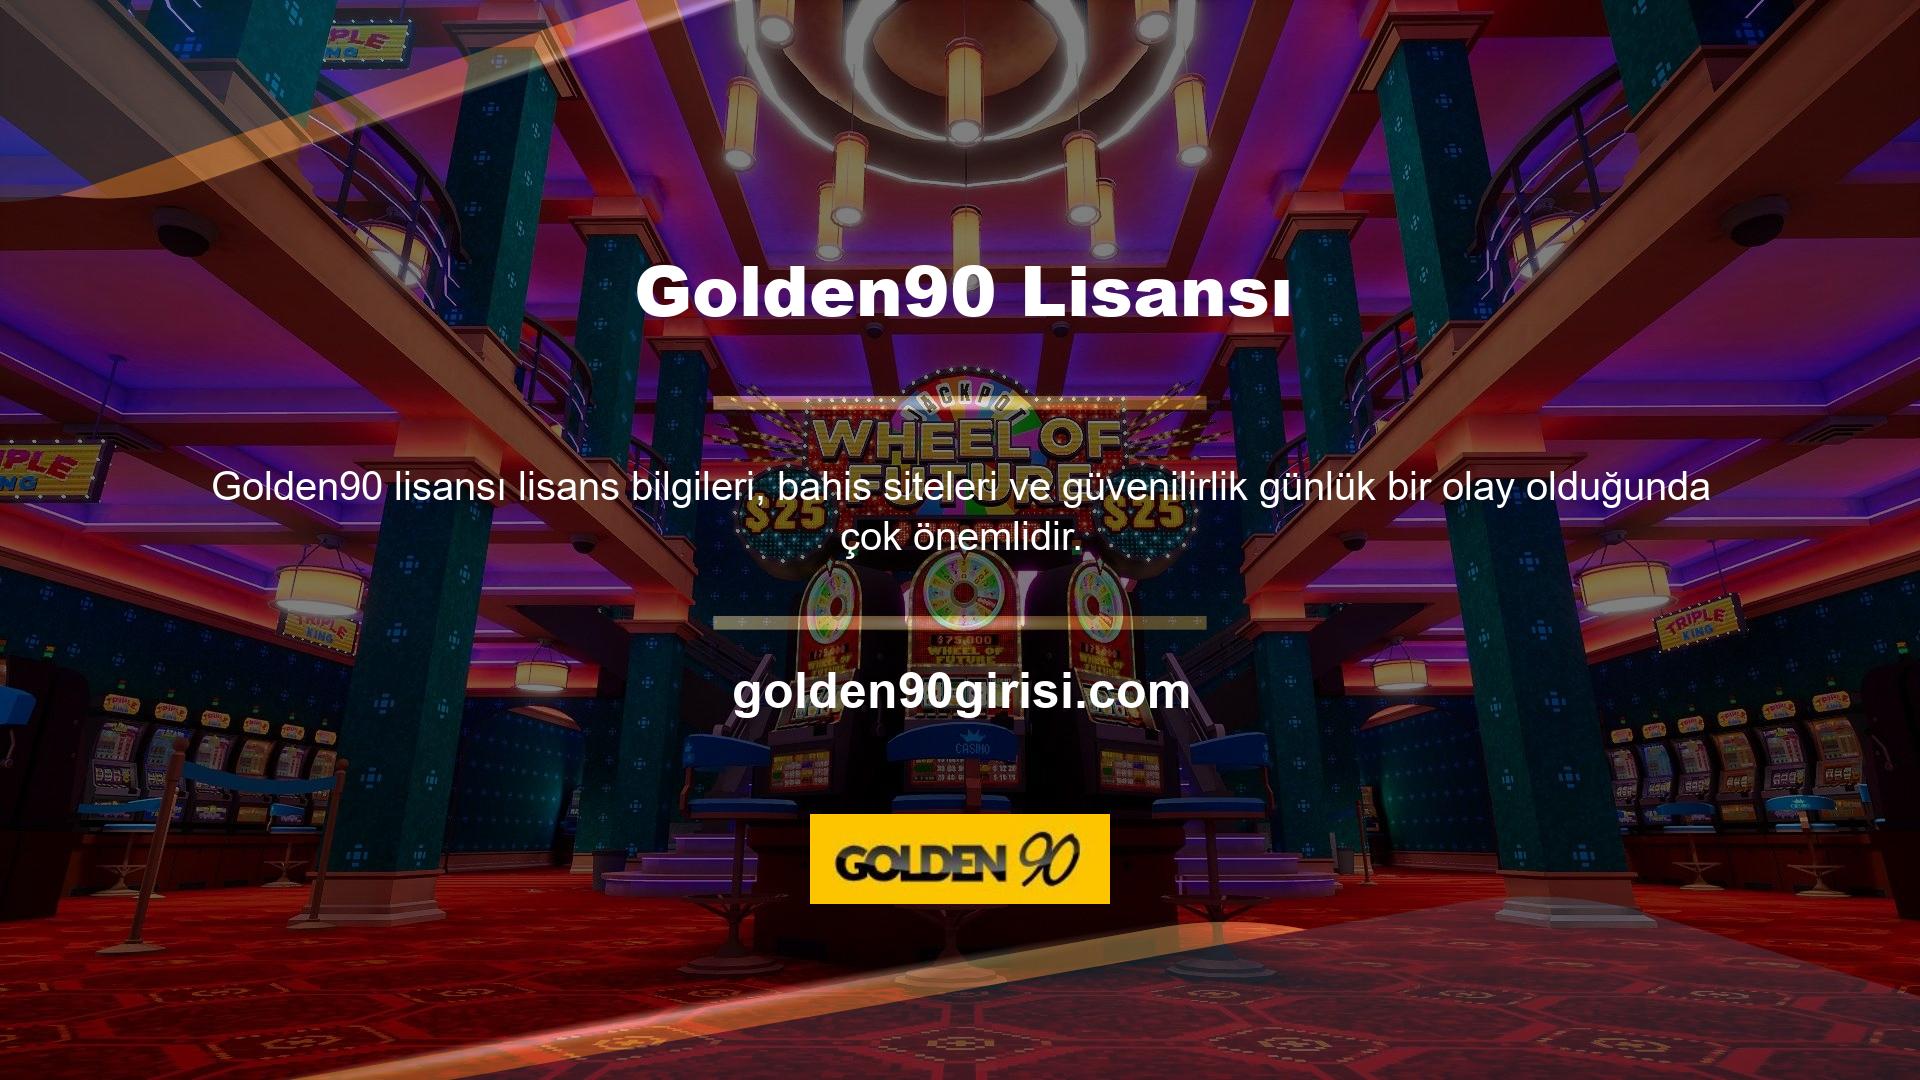 Bu yüzden son zamanlarda Golden90 hakkında çok fazla soru alıyorum